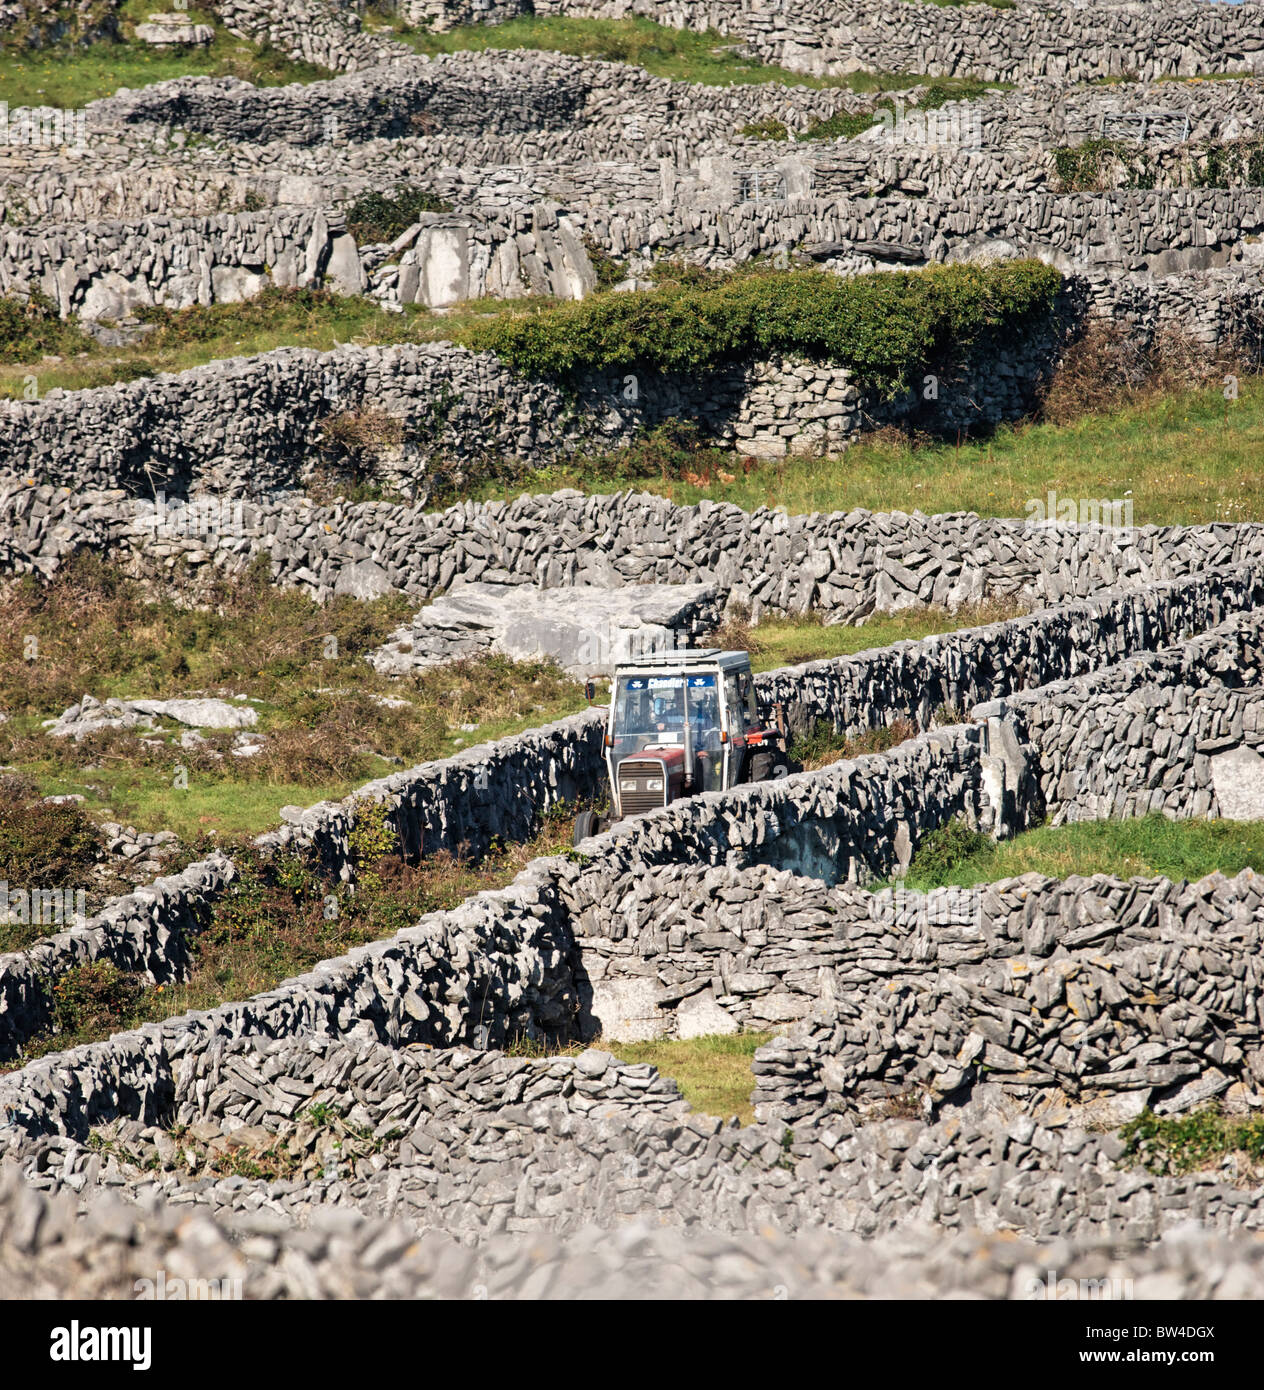 Un tracteur roulant le long d'une voie verte entre les champs de murs en pierre sèche à Inis Meain, Aran Islands, comté de Galway, Irlande. Banque D'Images